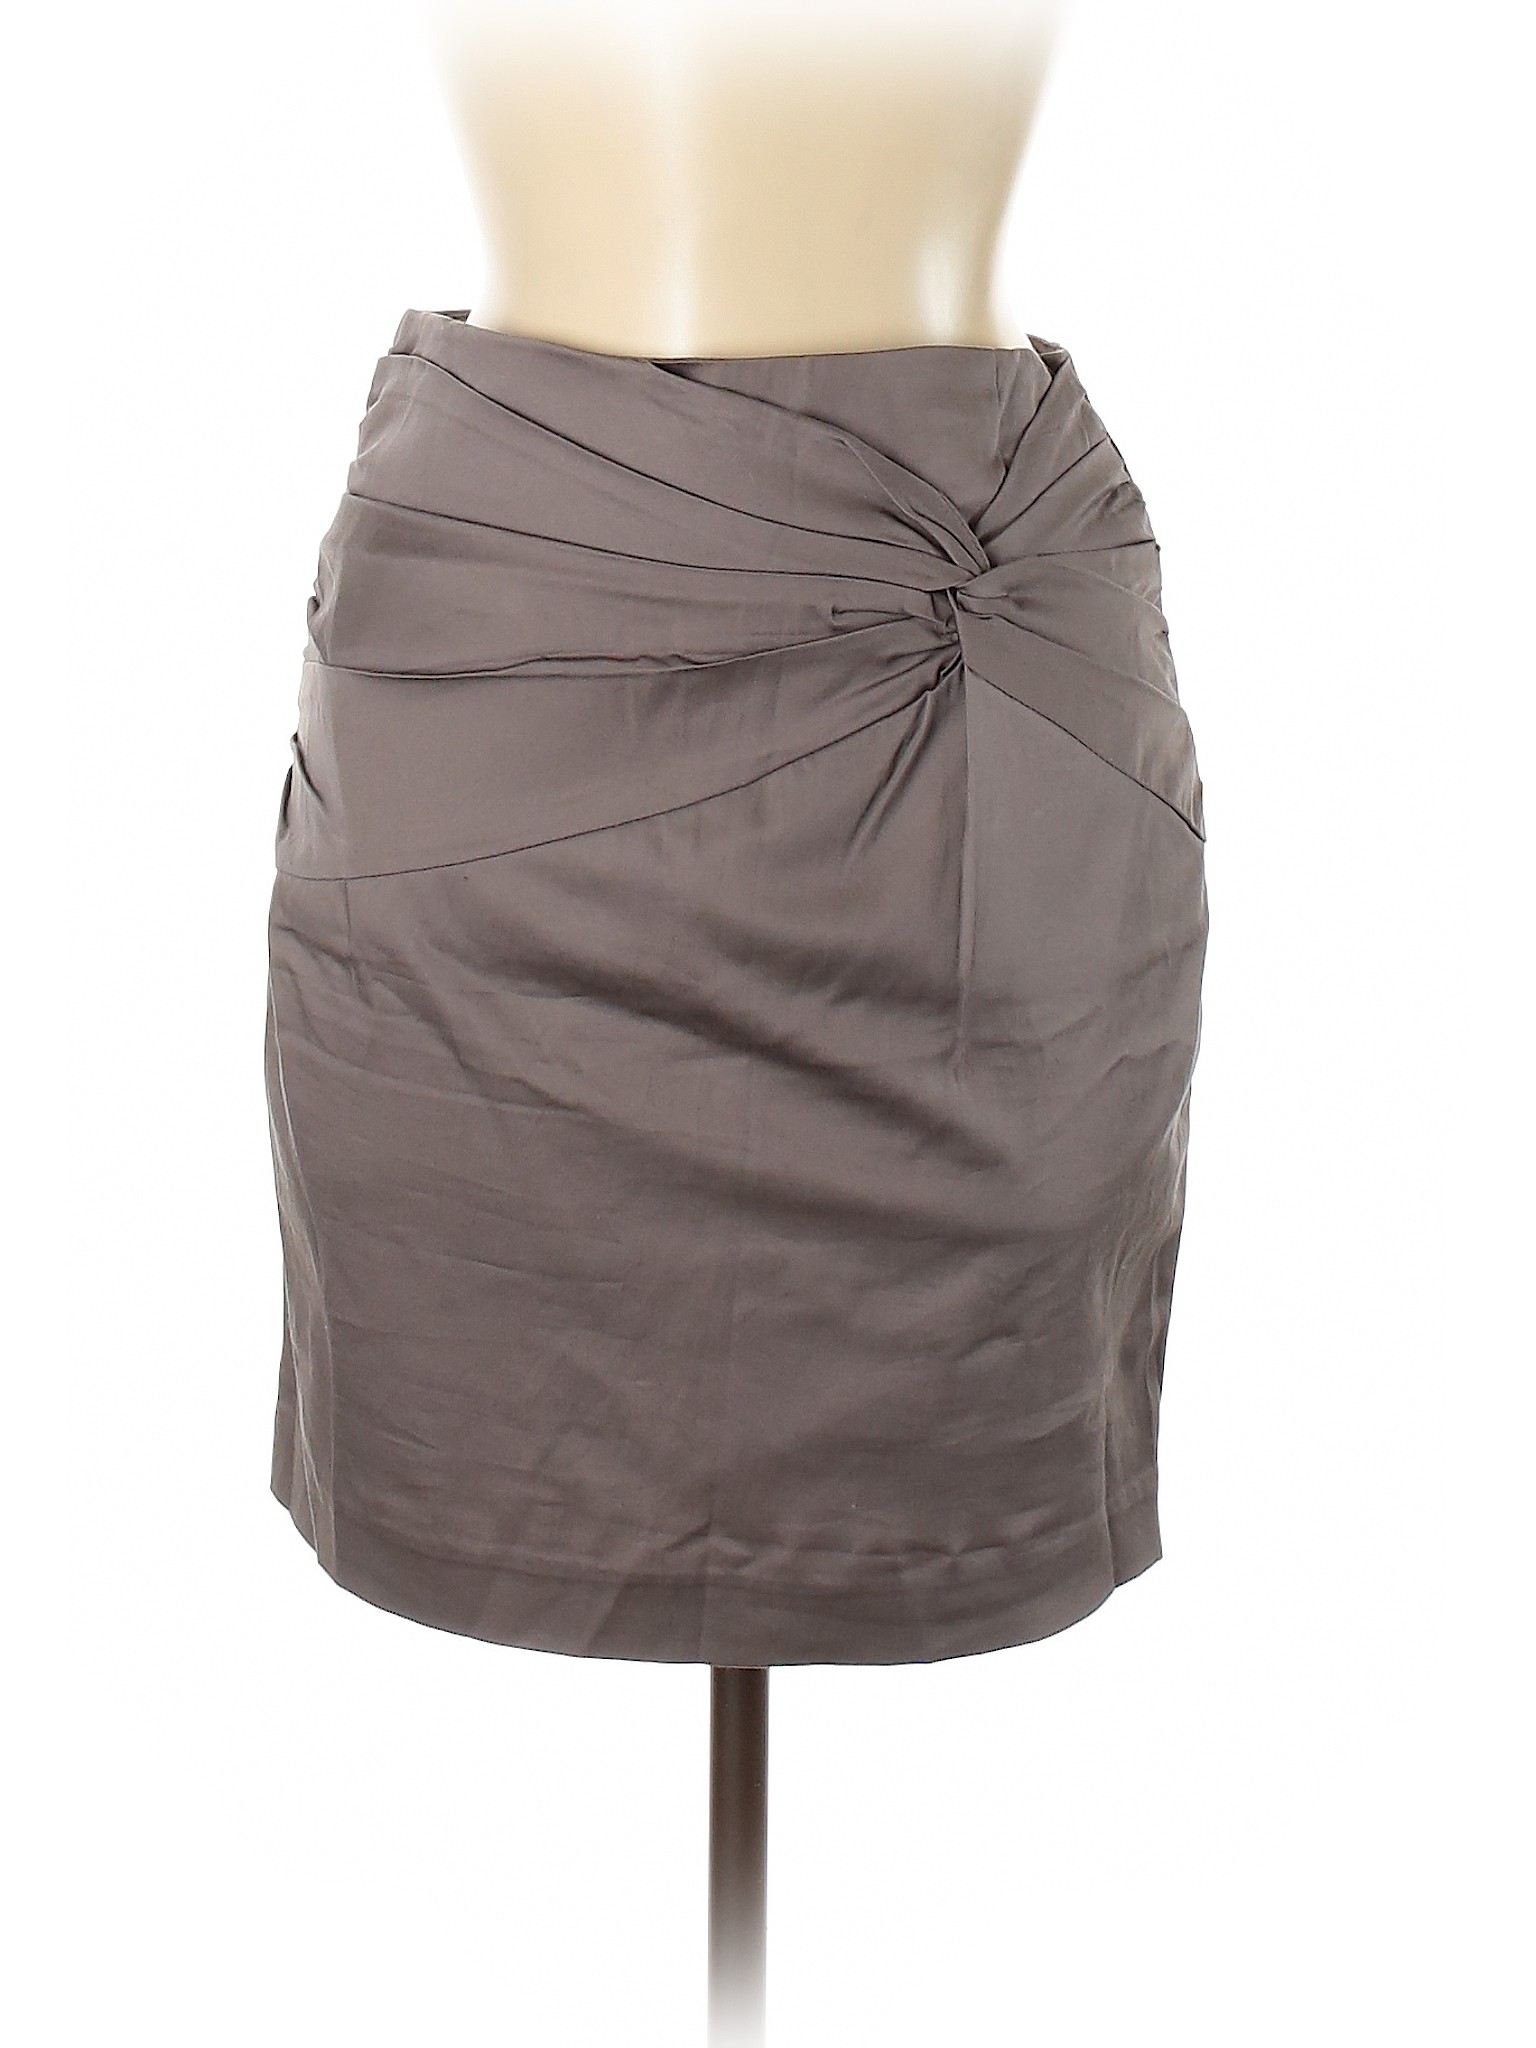 NWT H&M Women Gray Casual Skirt 6 | eBay